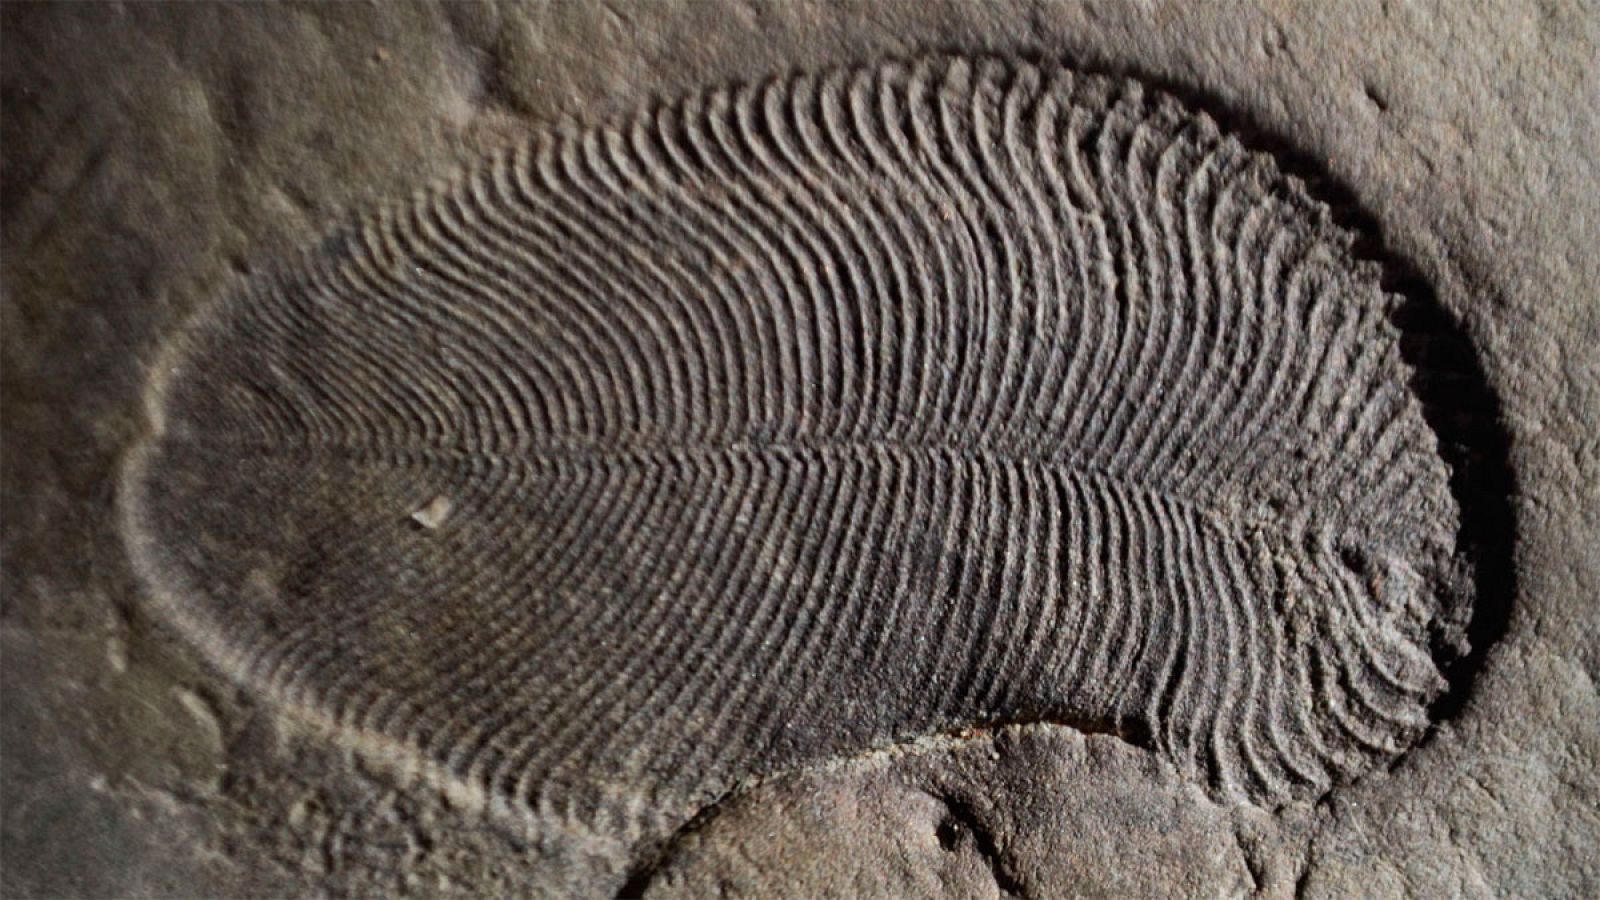 Dickinsonia medía 1,4 metros de largo, tenía una forma ovalada y su cuerpo estaba dividido en segmentos similares.